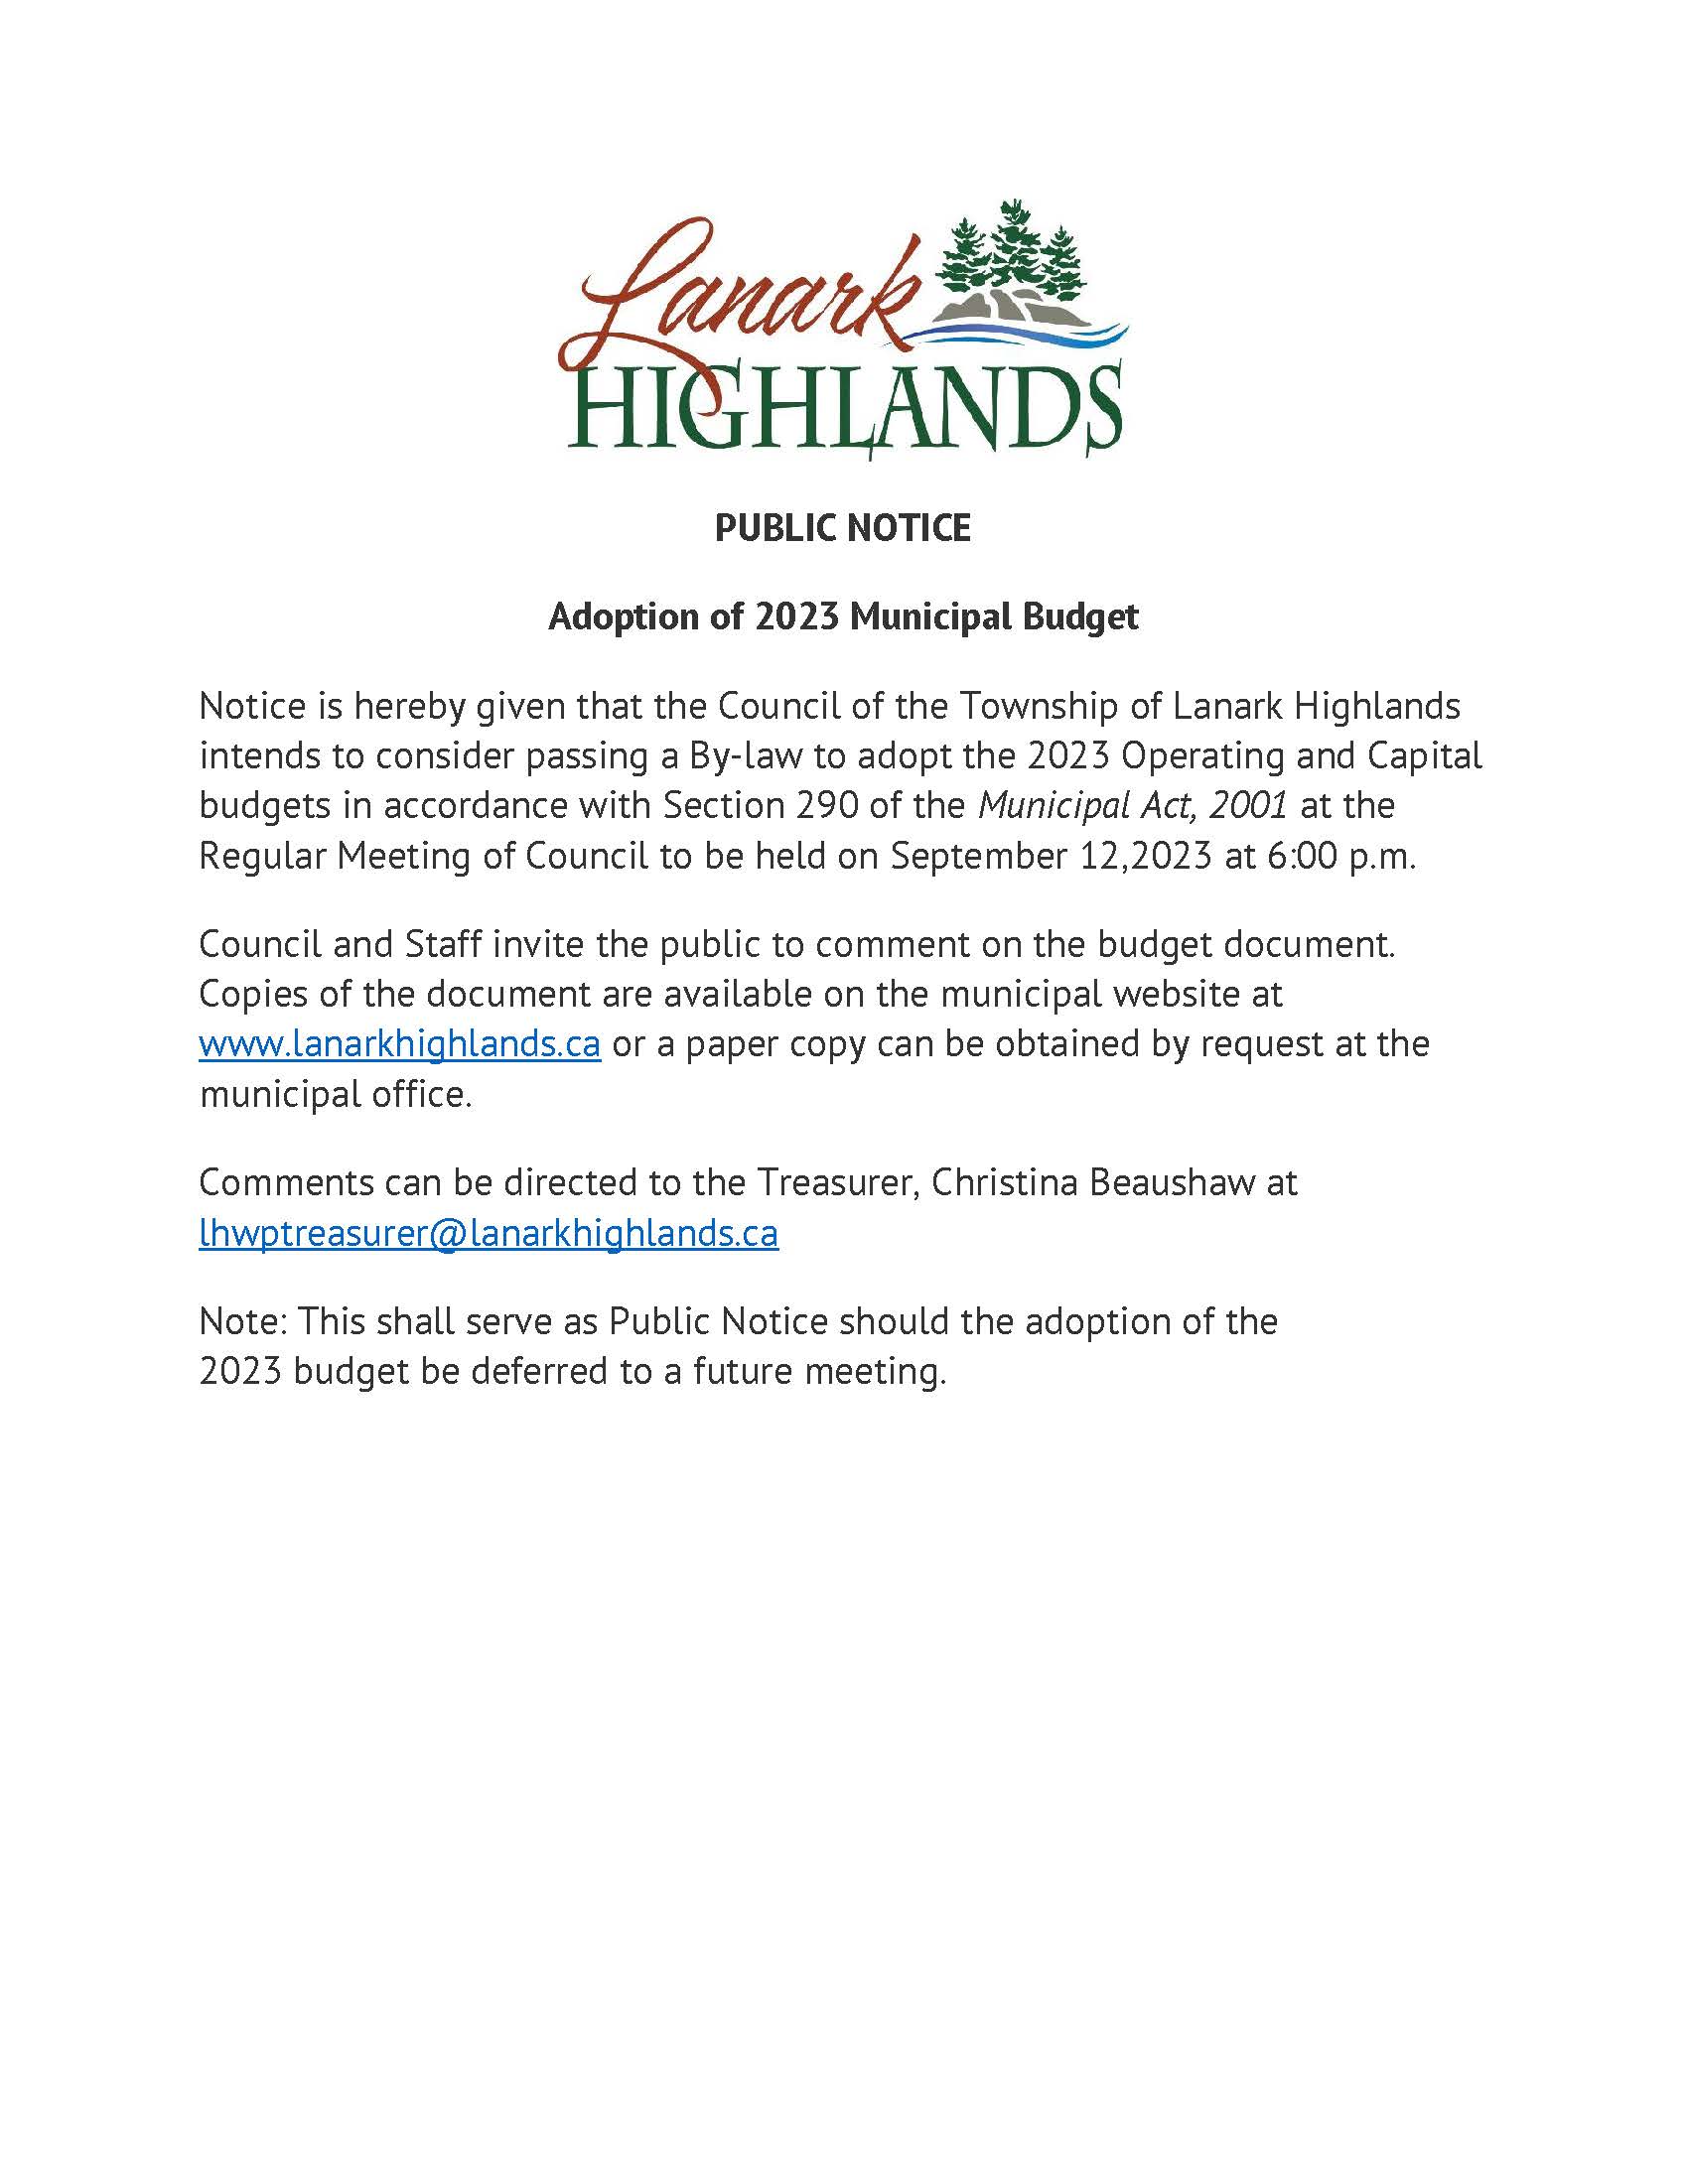 Passing of Budget Public Notice